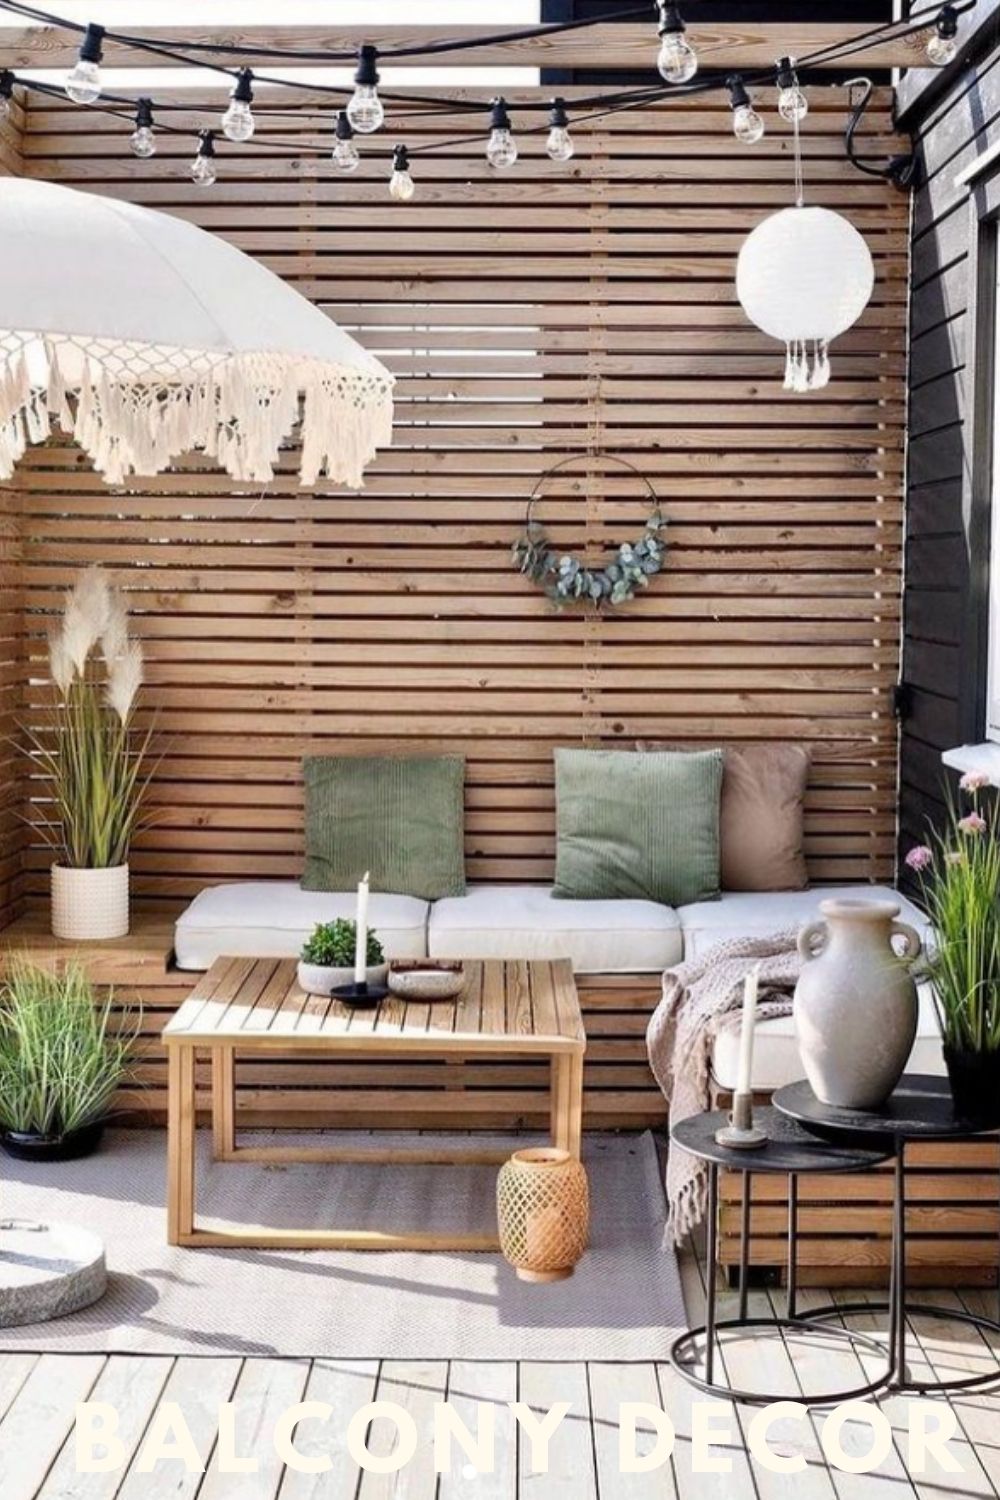 Creative Yet Simple Summer Balcony Decor Ideas